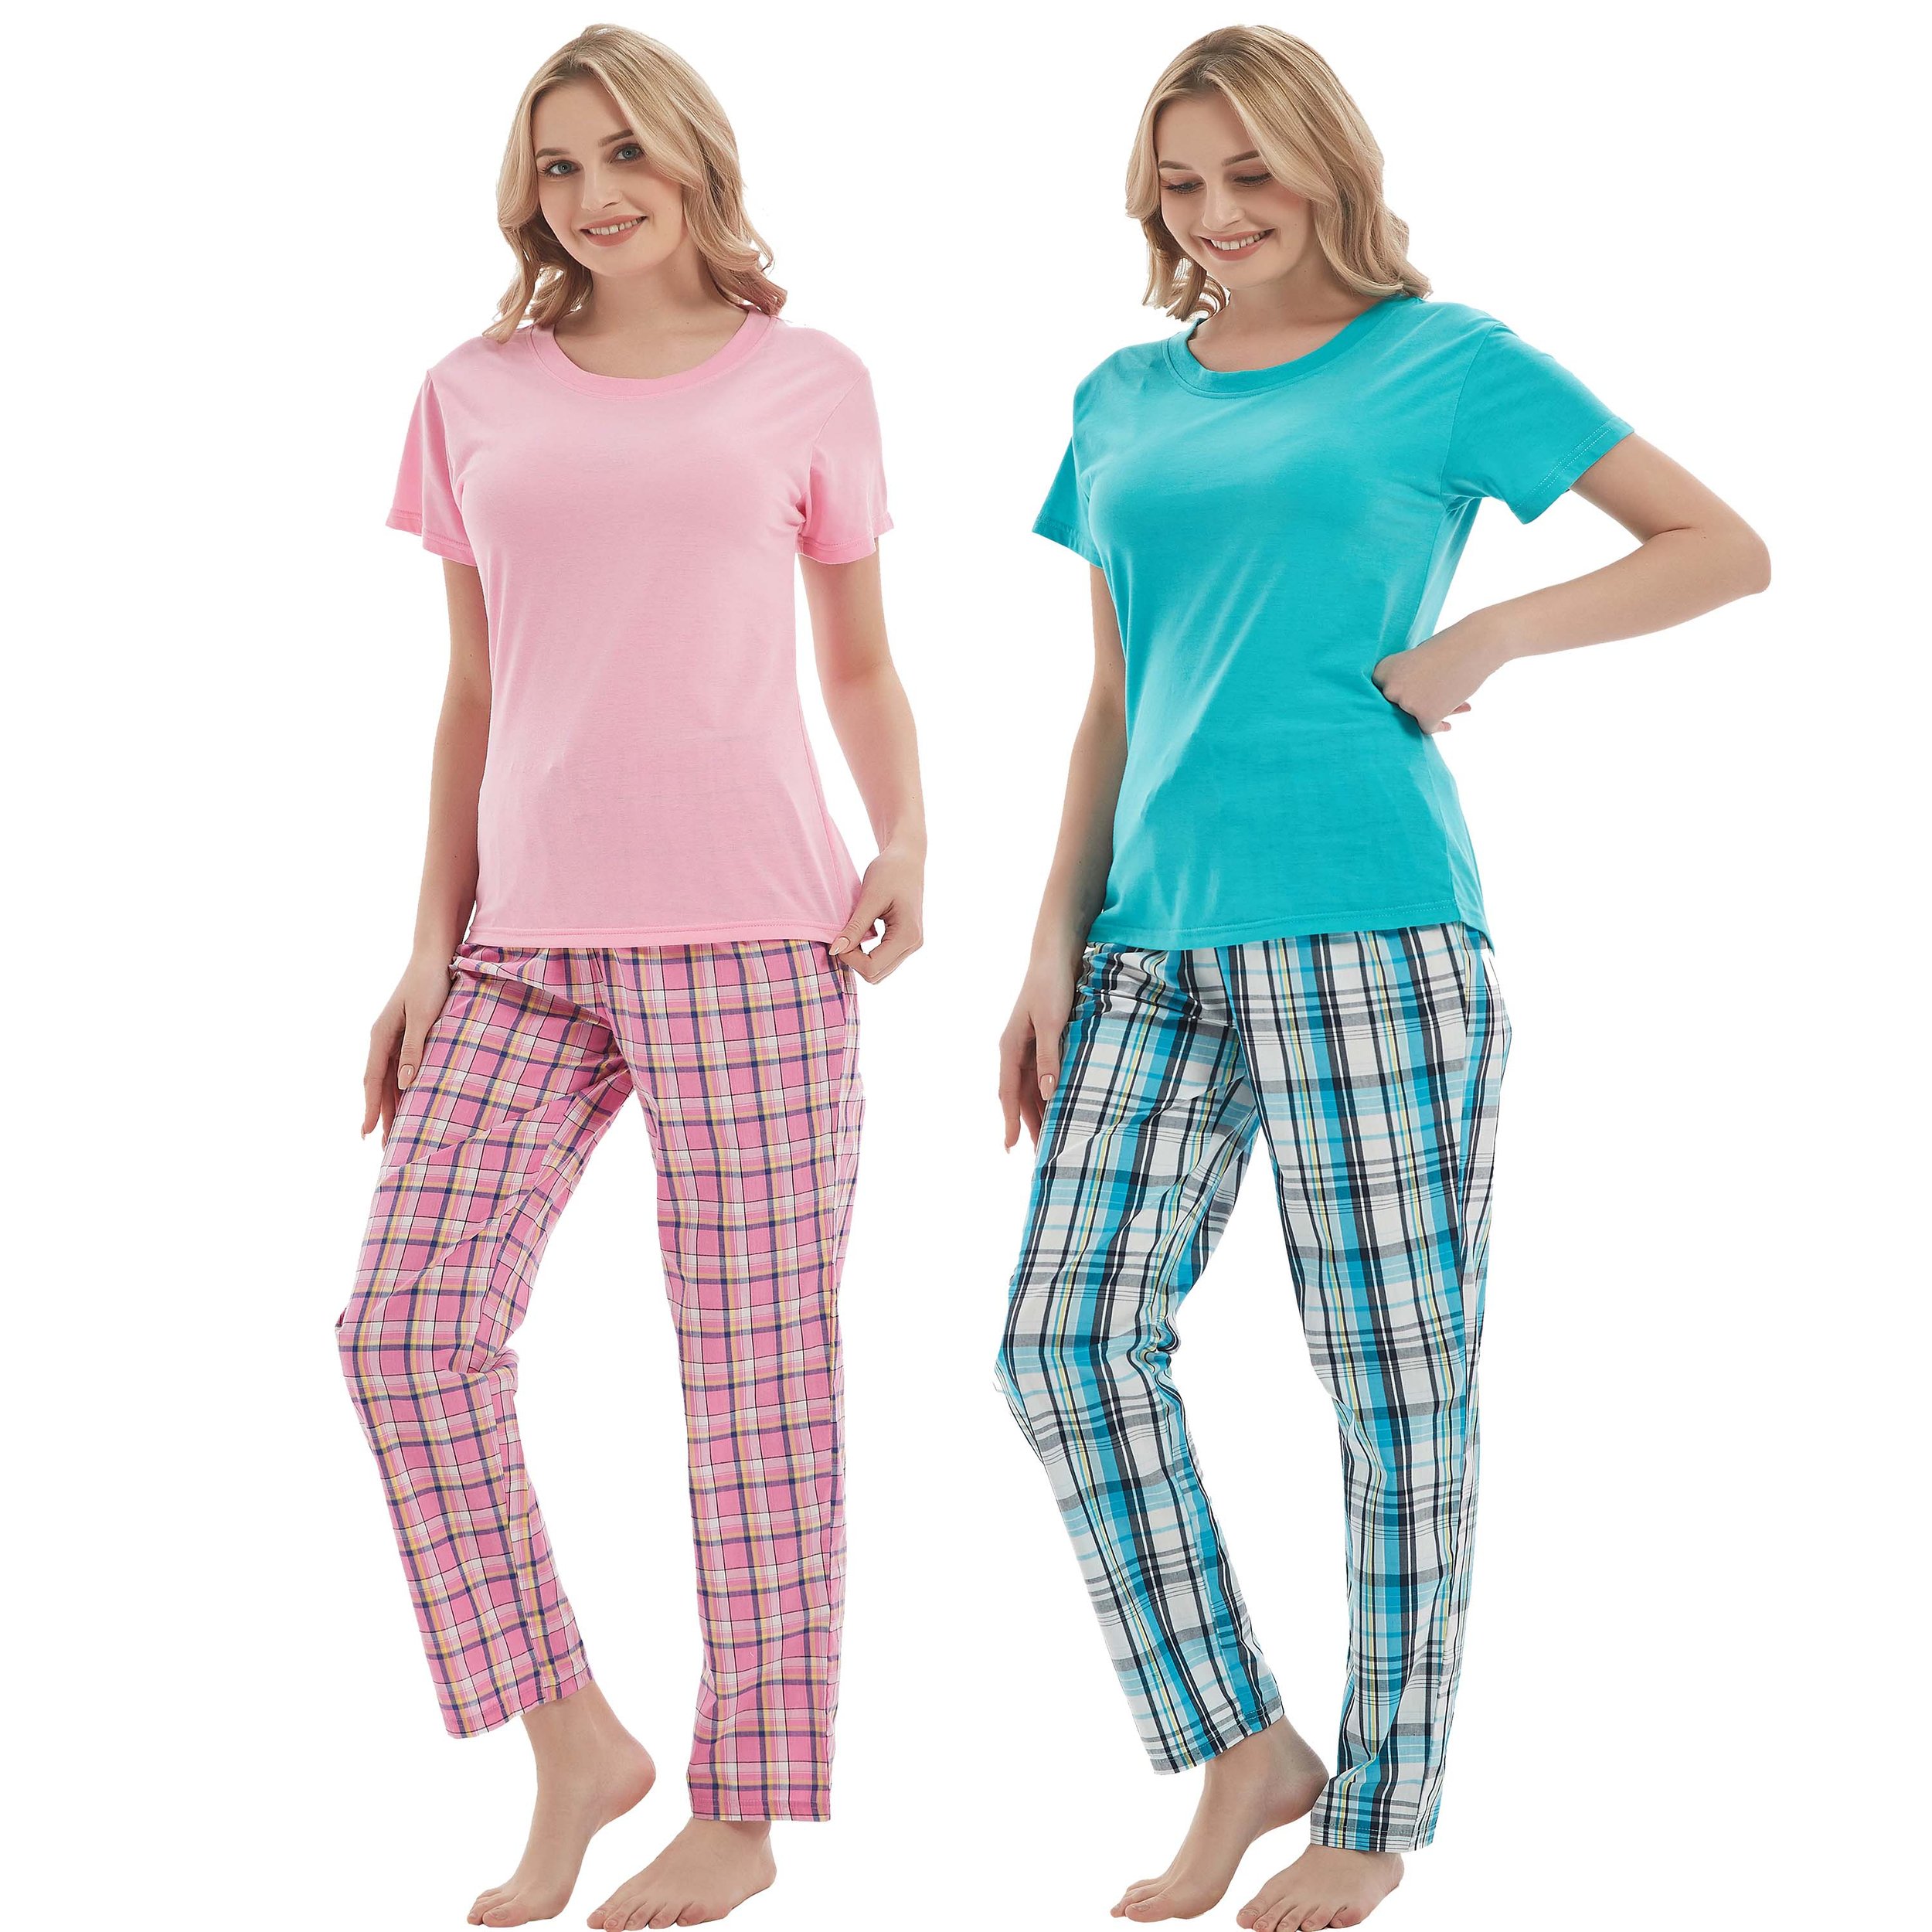 iceBoo Ladies Nightshirt 100% Cotton Jersey Fun Prints Nightie Scoop Neck Loungewear Womens Short Sleeve 1 OR 3 Pack 